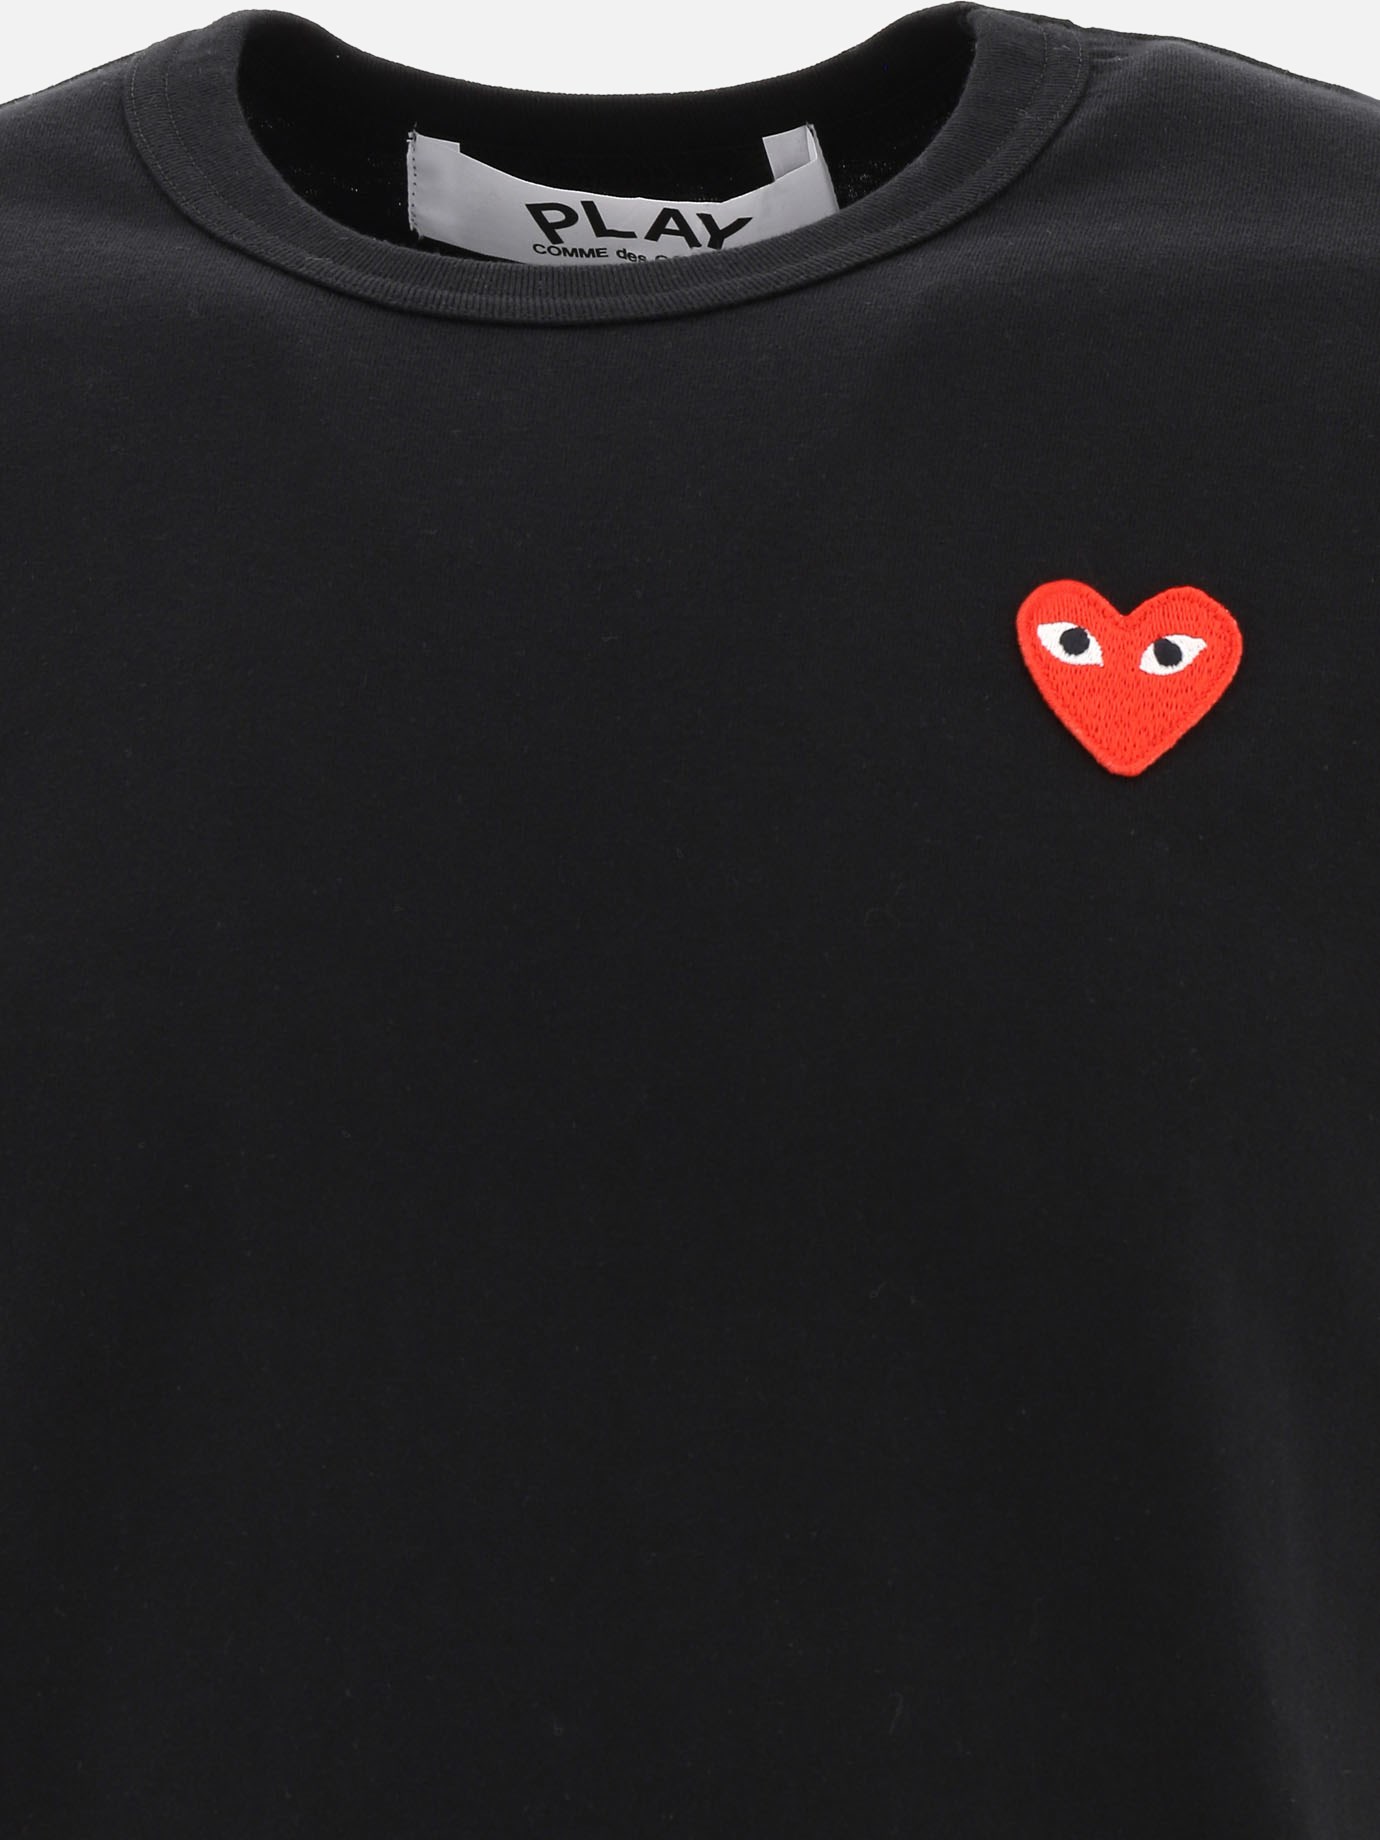  Heart  t-shirt by Comme Des Garçons Play